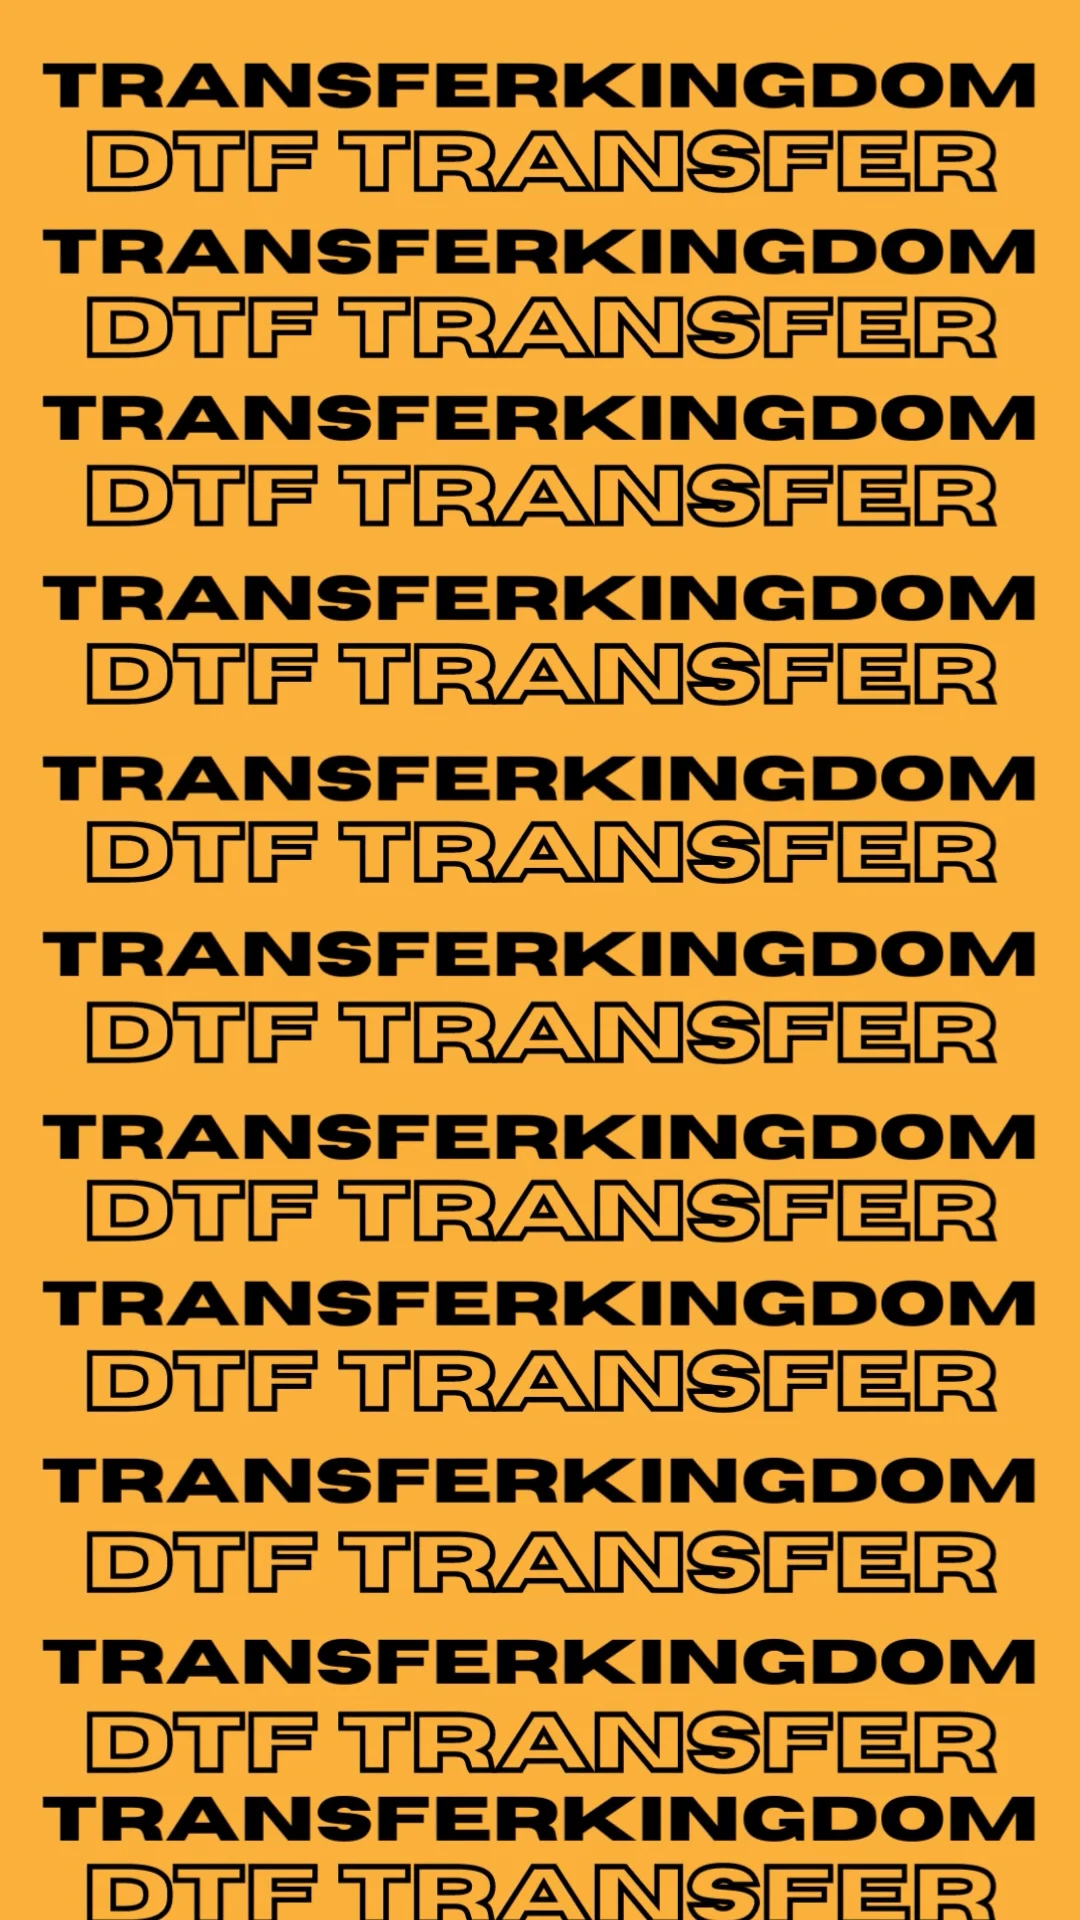 TransferKingdom